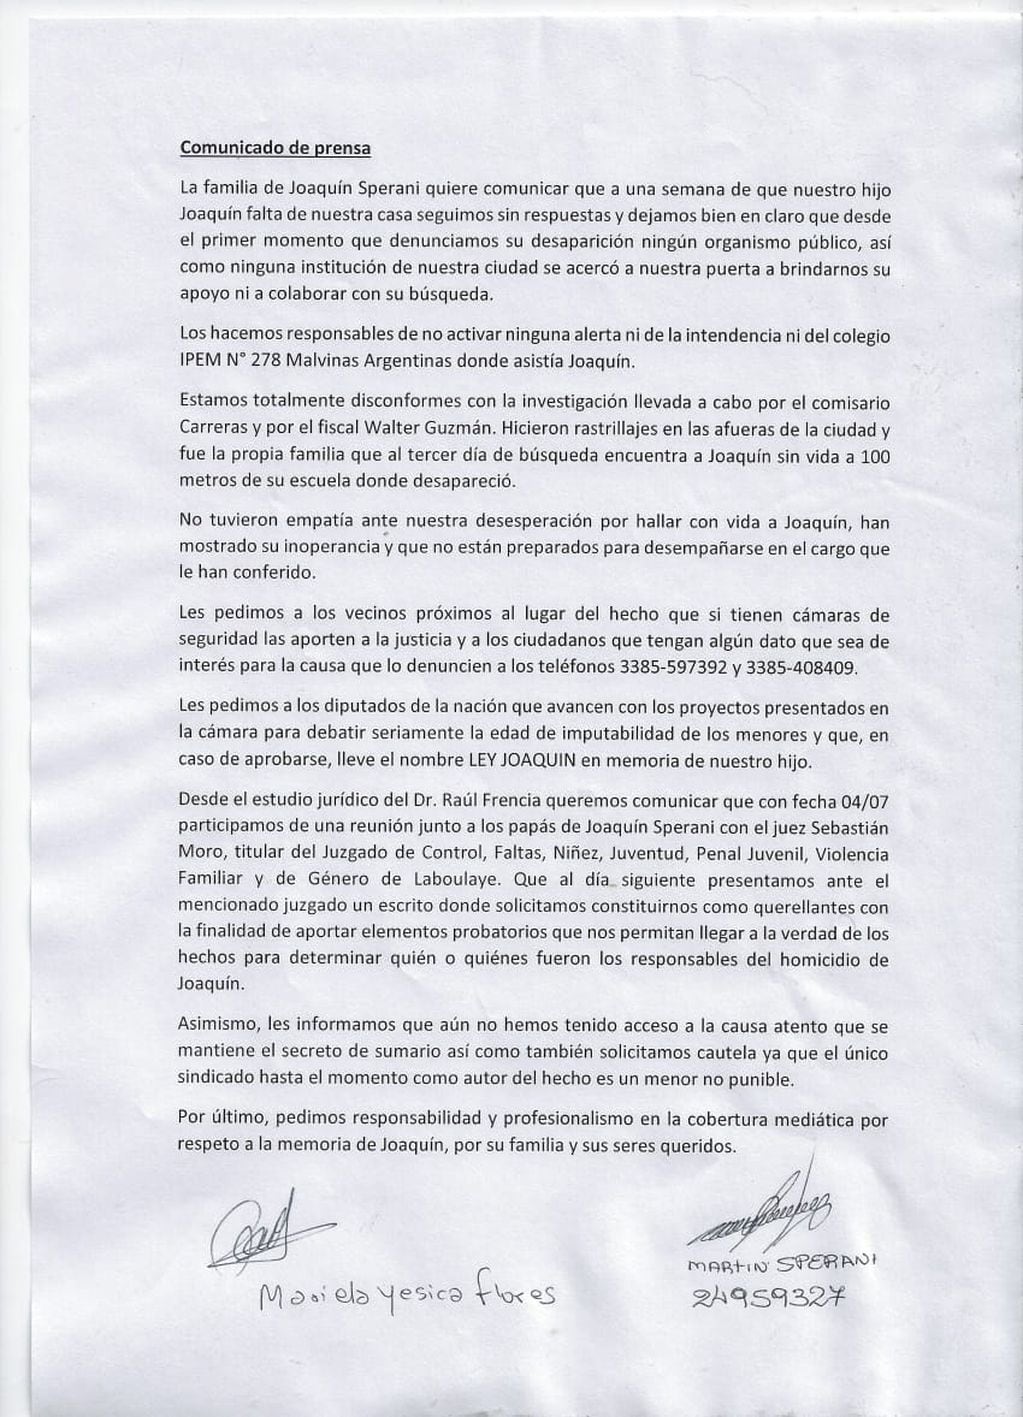 El comunicado de prensa publicado por la familia de Joaquín.